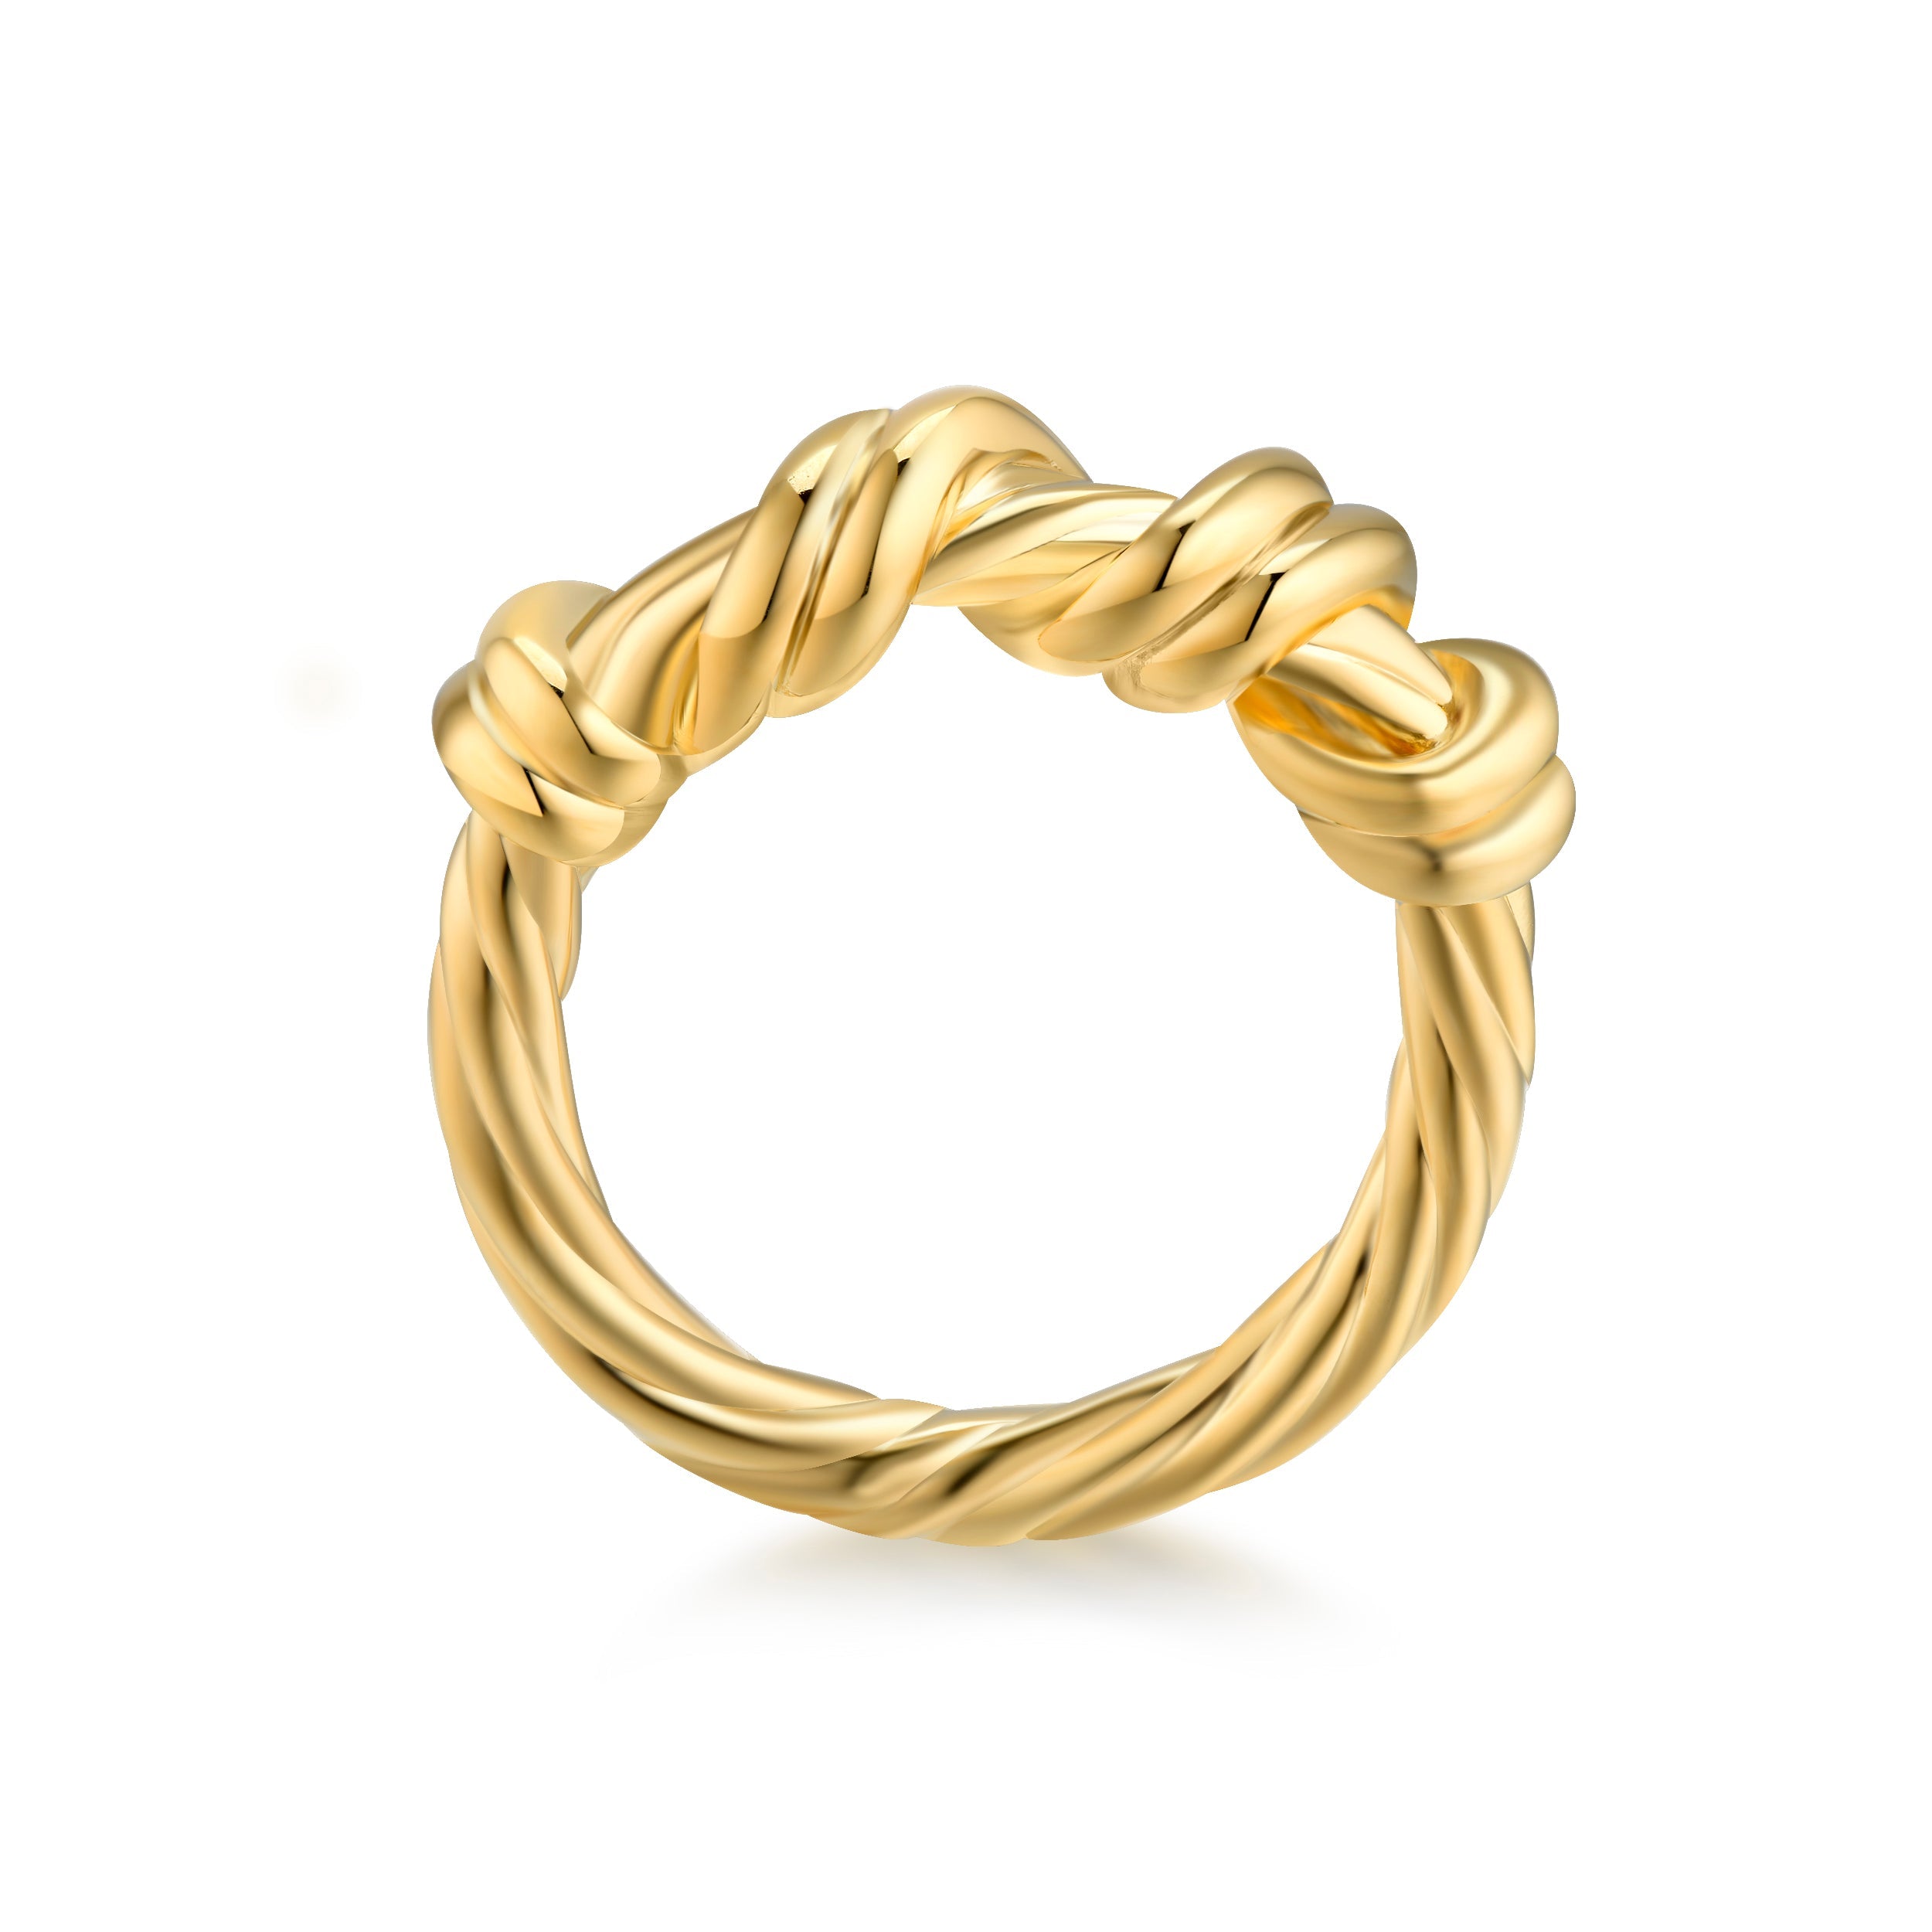 Mia Delicate Gold Twist Ring